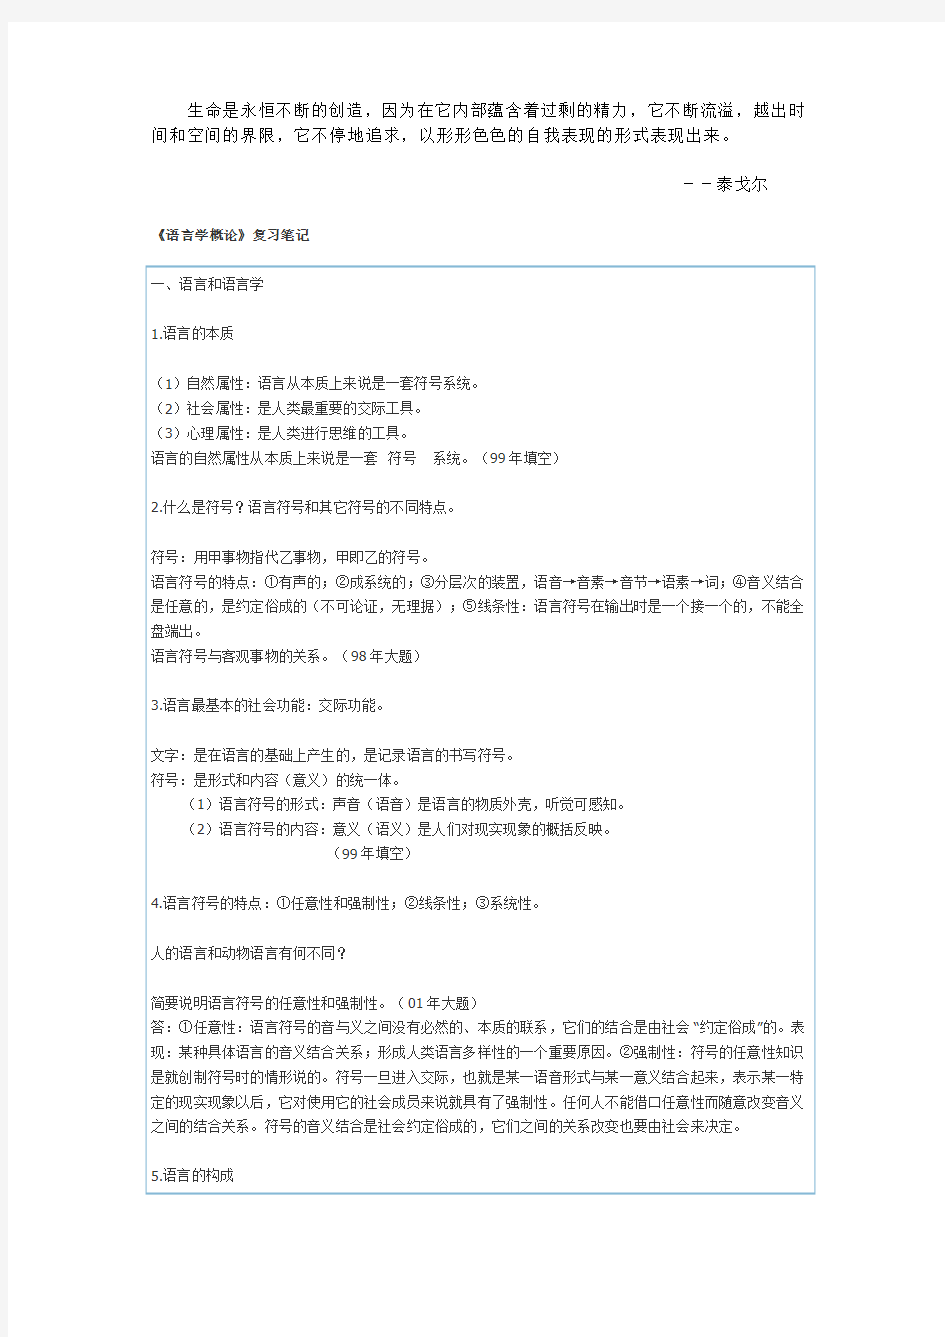 《语言学概论》复习笔记对外汉语专业考研